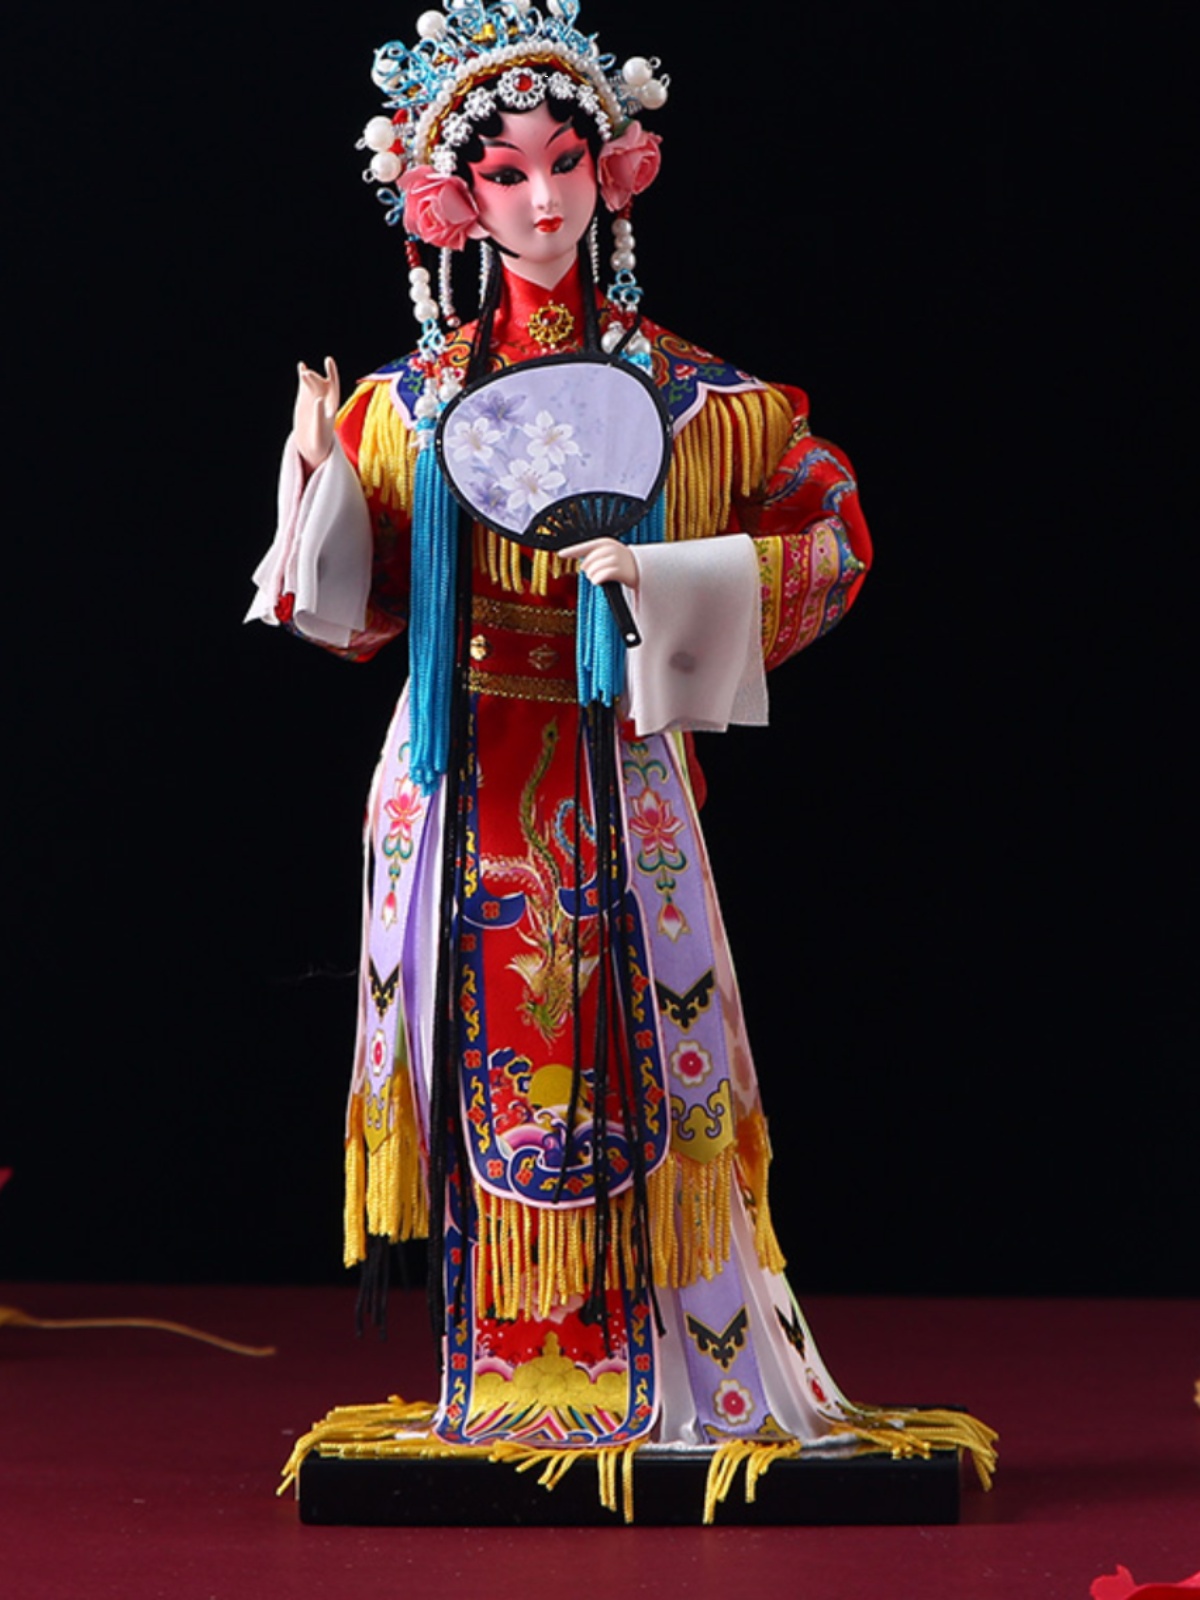 中国风特色工艺品绢人北京剧人偶精品娃娃送老外出国礼品礼物摆件